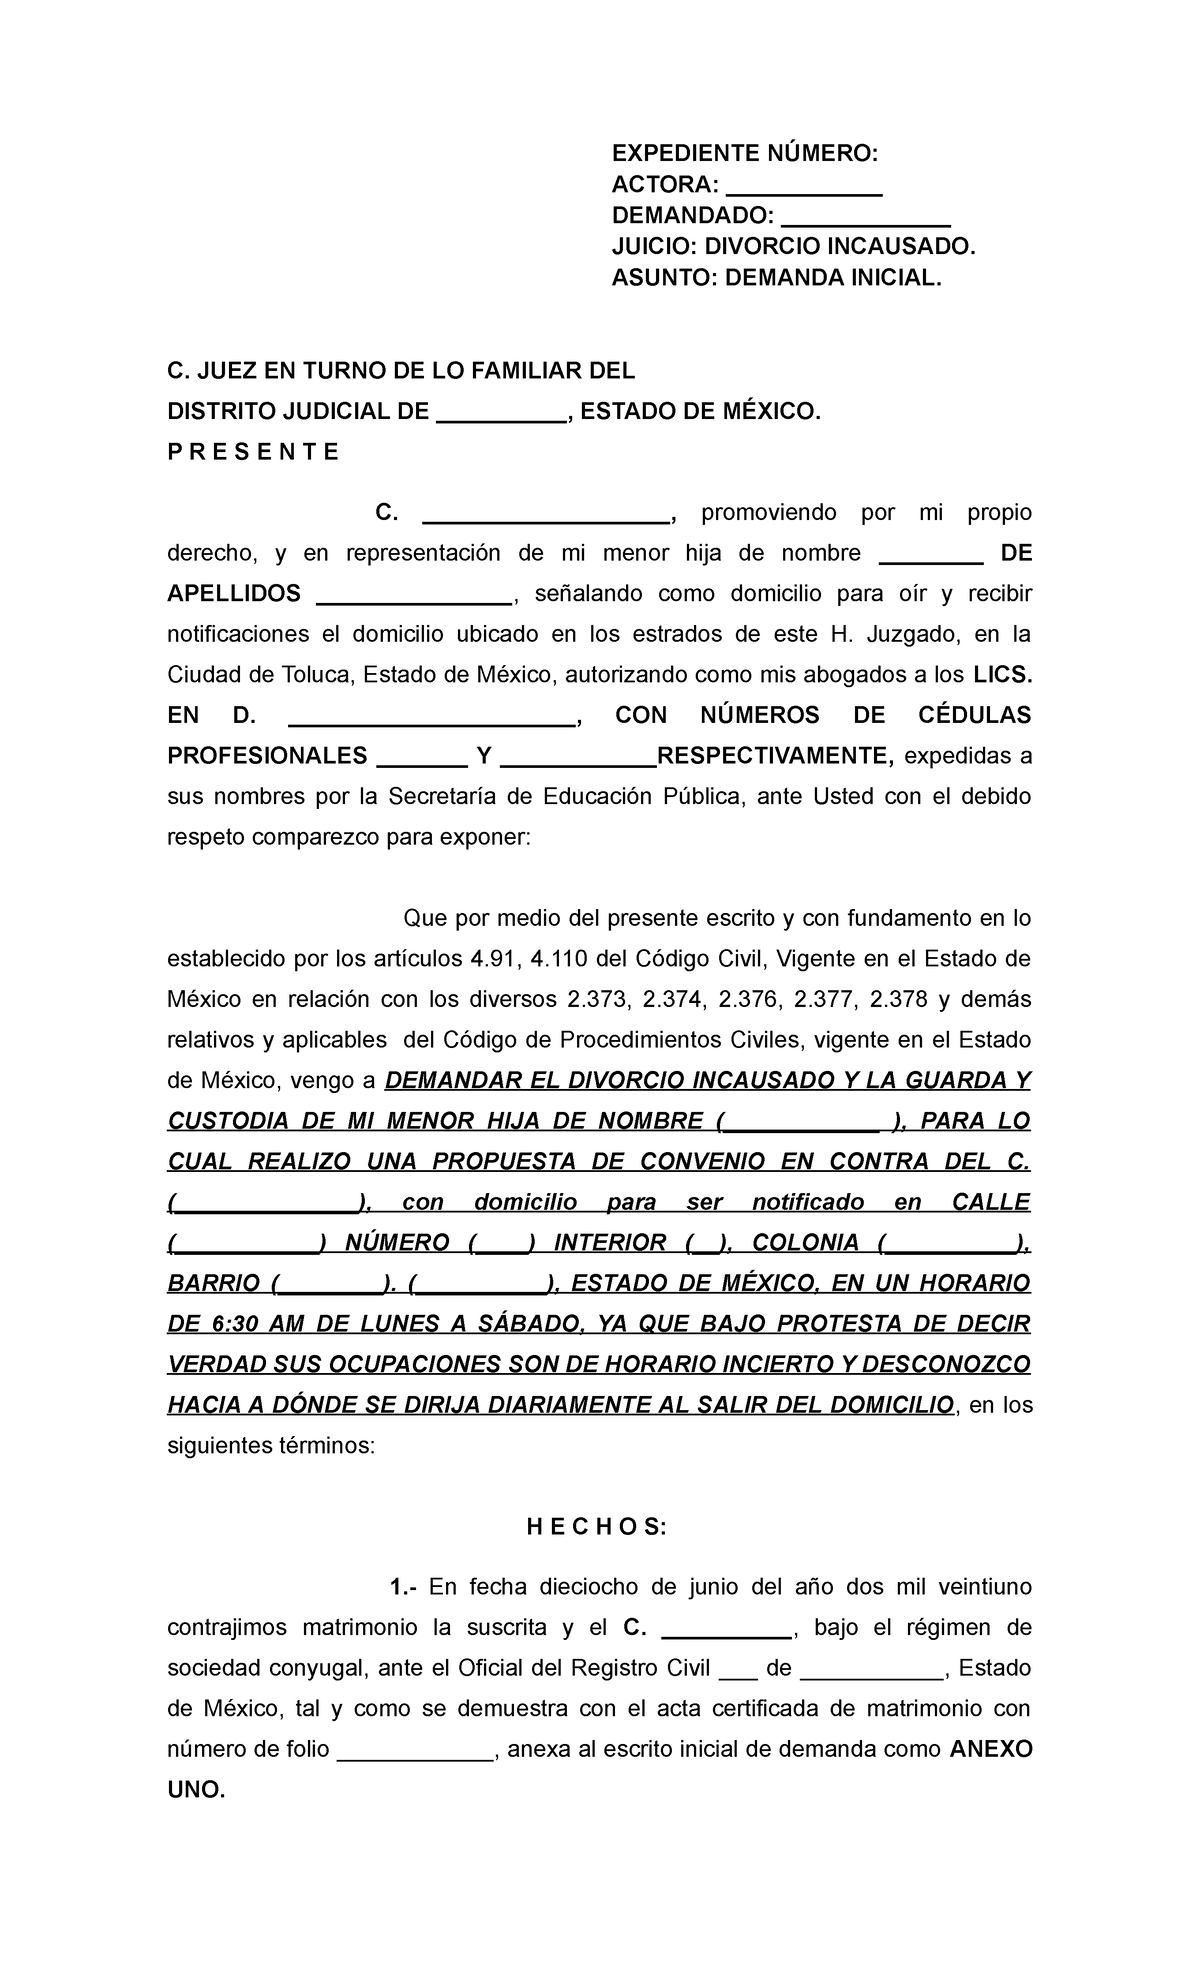 Formato divorcio incausado Estado de México - EXPEDIENTE NÚMERO: ACTORA ...